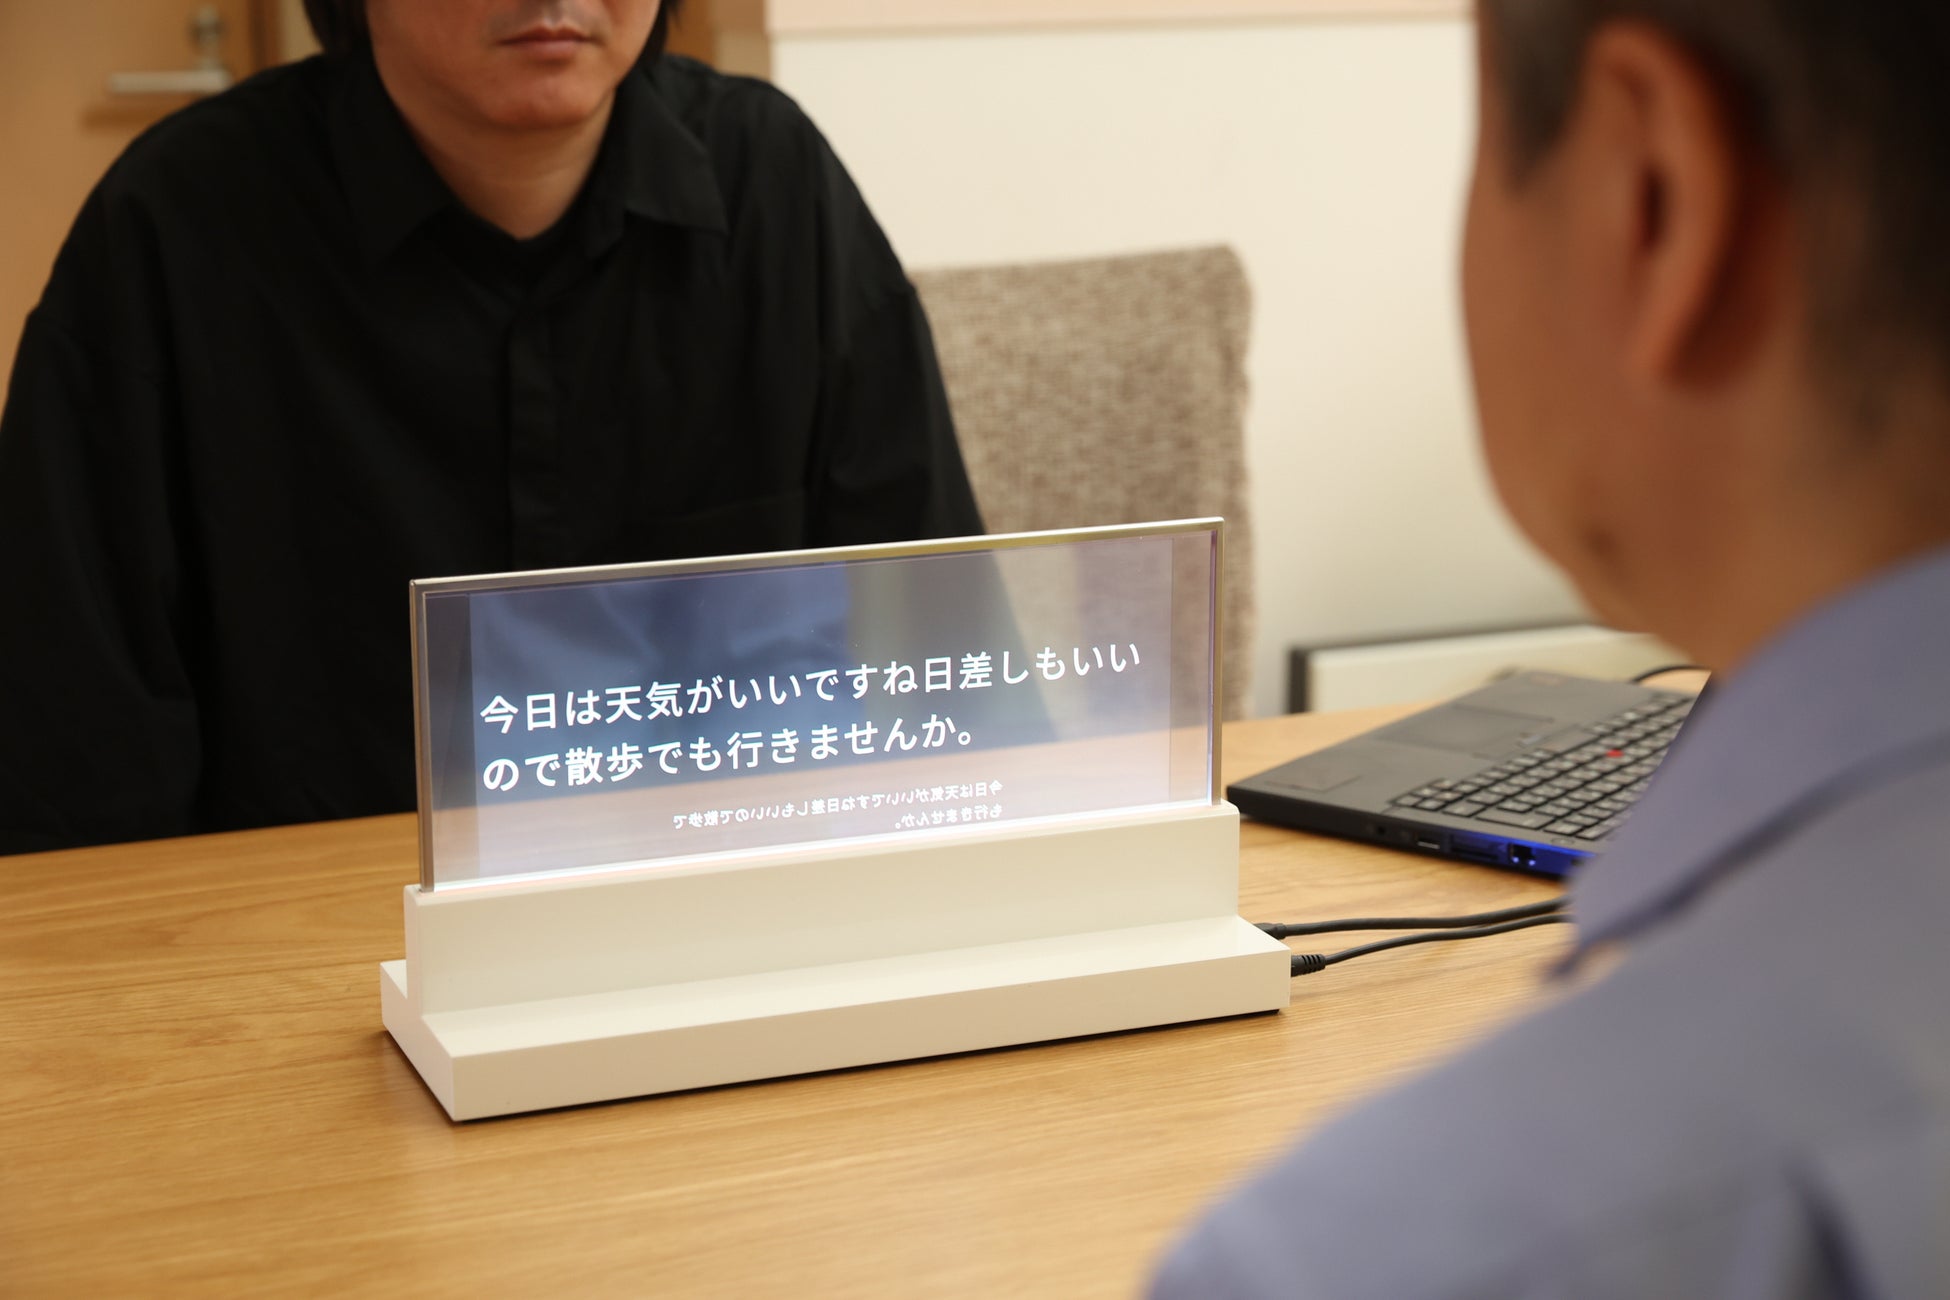 静岡県、会話の音声を自動で字幕表示するディスプレイを試験設置[ニュース]